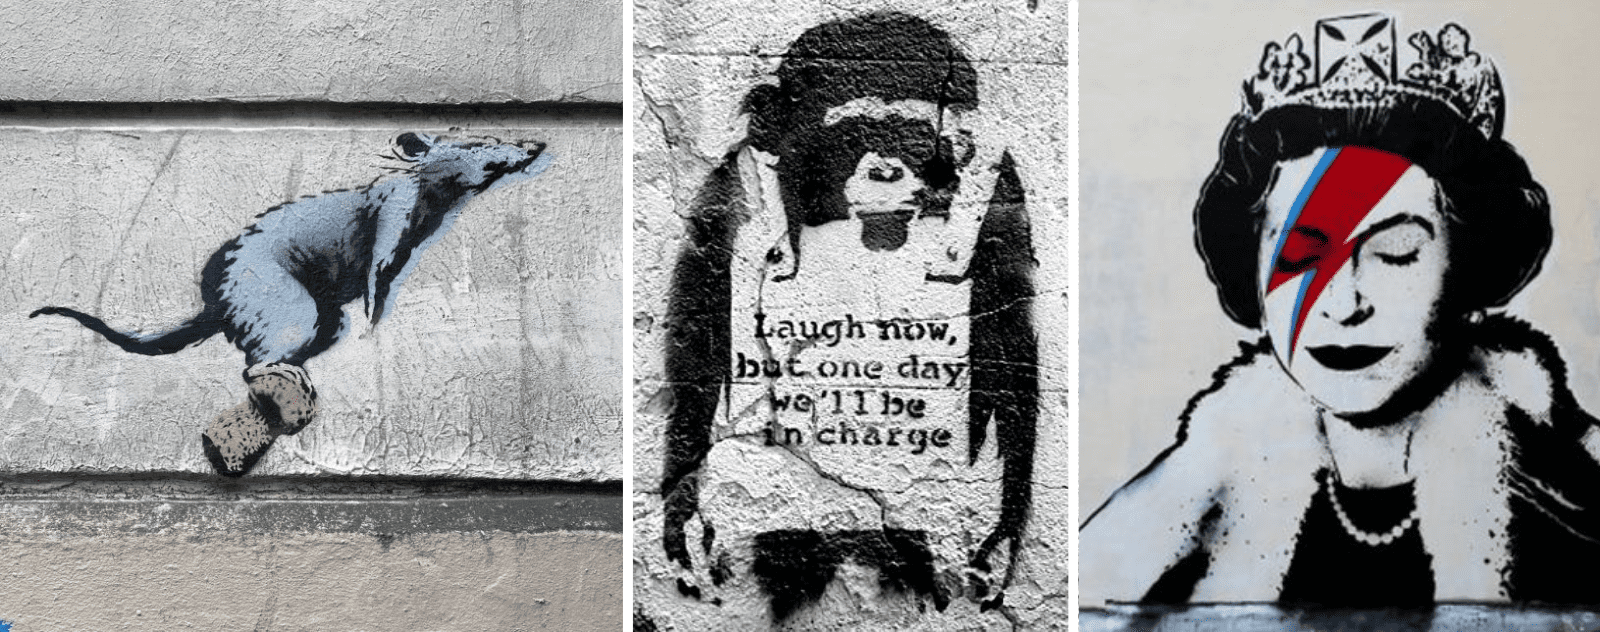 Personnages de Banksy